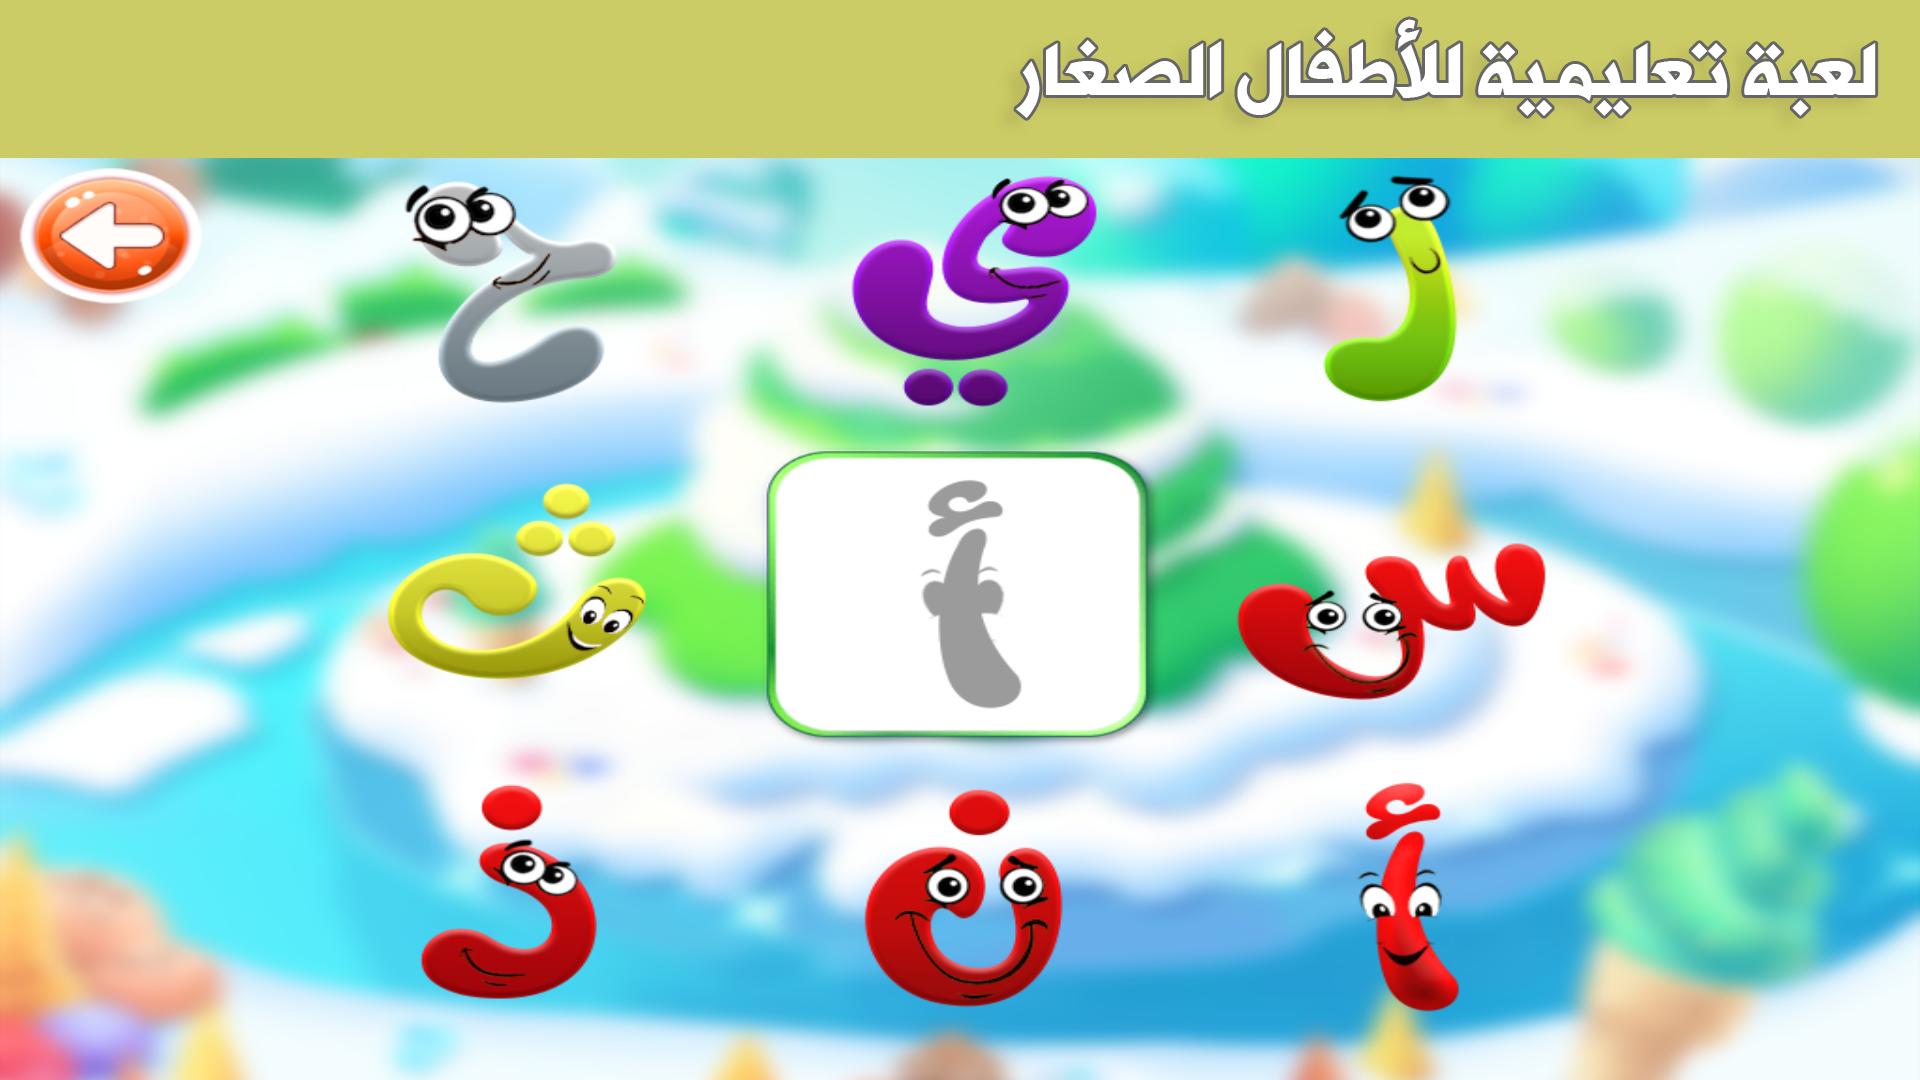 حزورة وفزورة - ألعاب للأطفال für Android - APK herunterladen